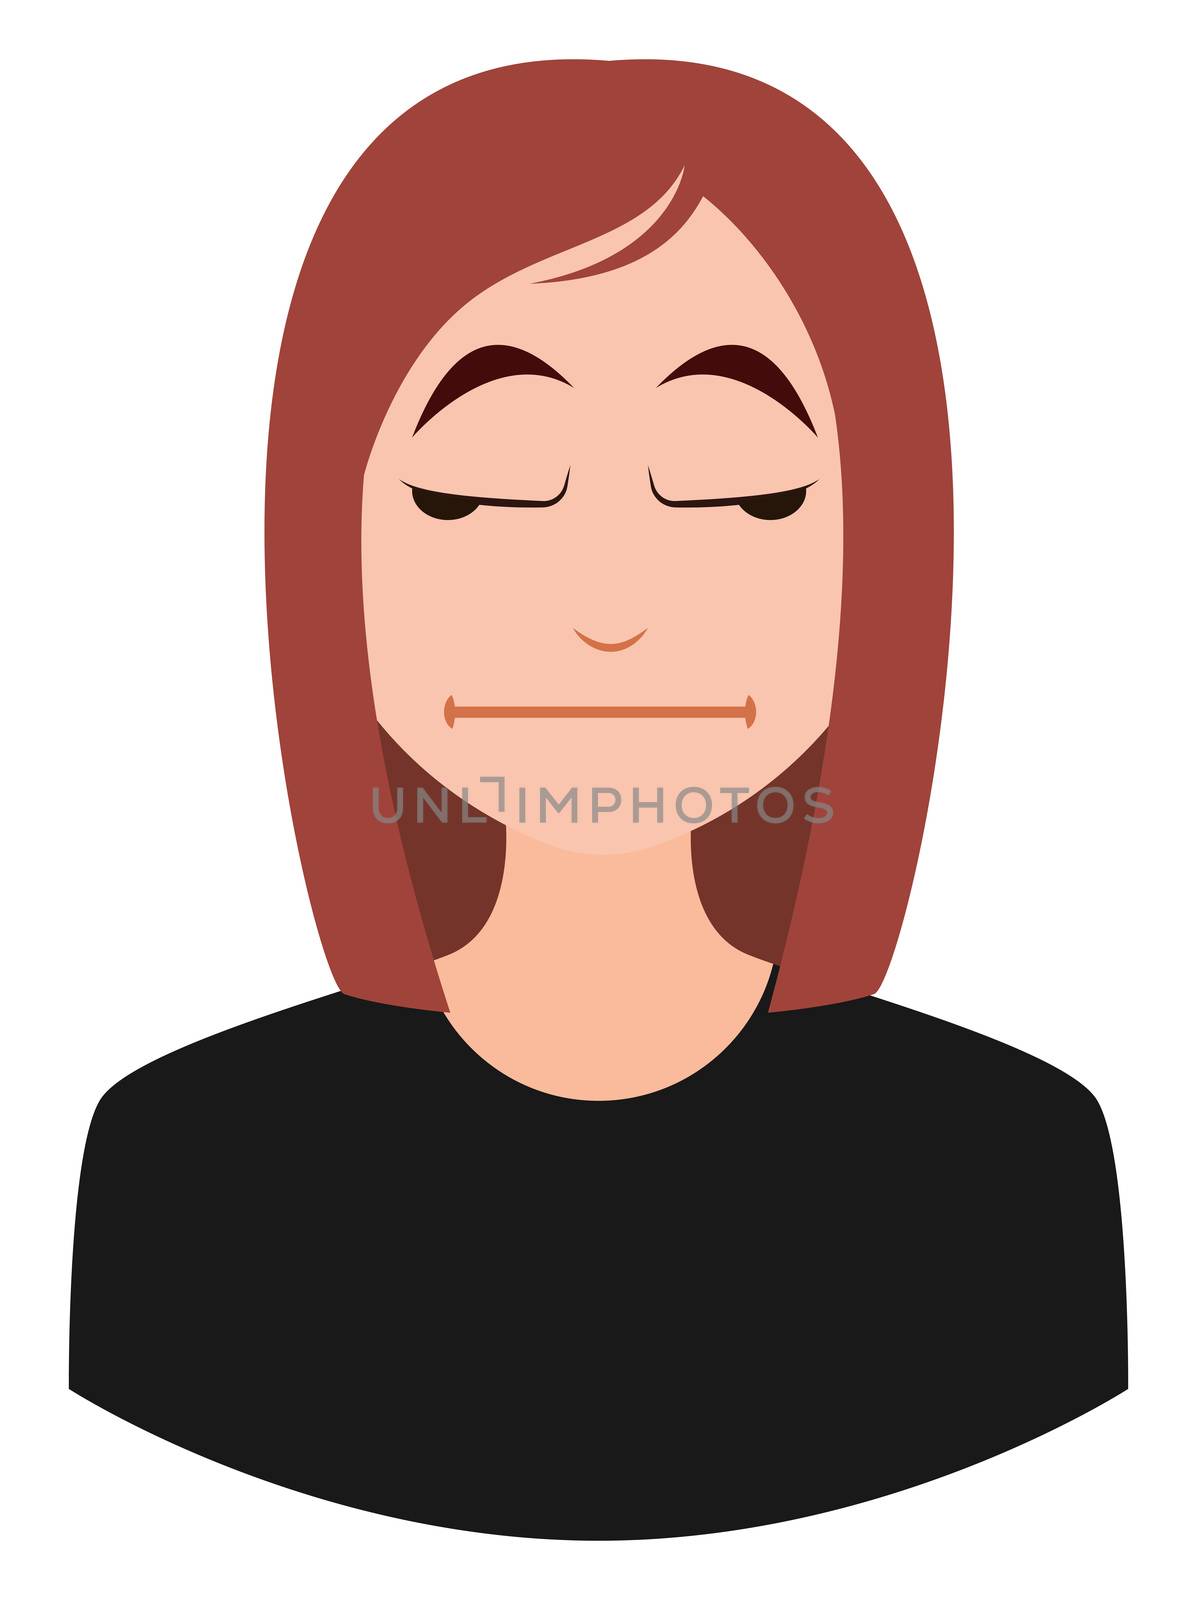 Bored girl emoji, illustration, vector on white background by Morphart